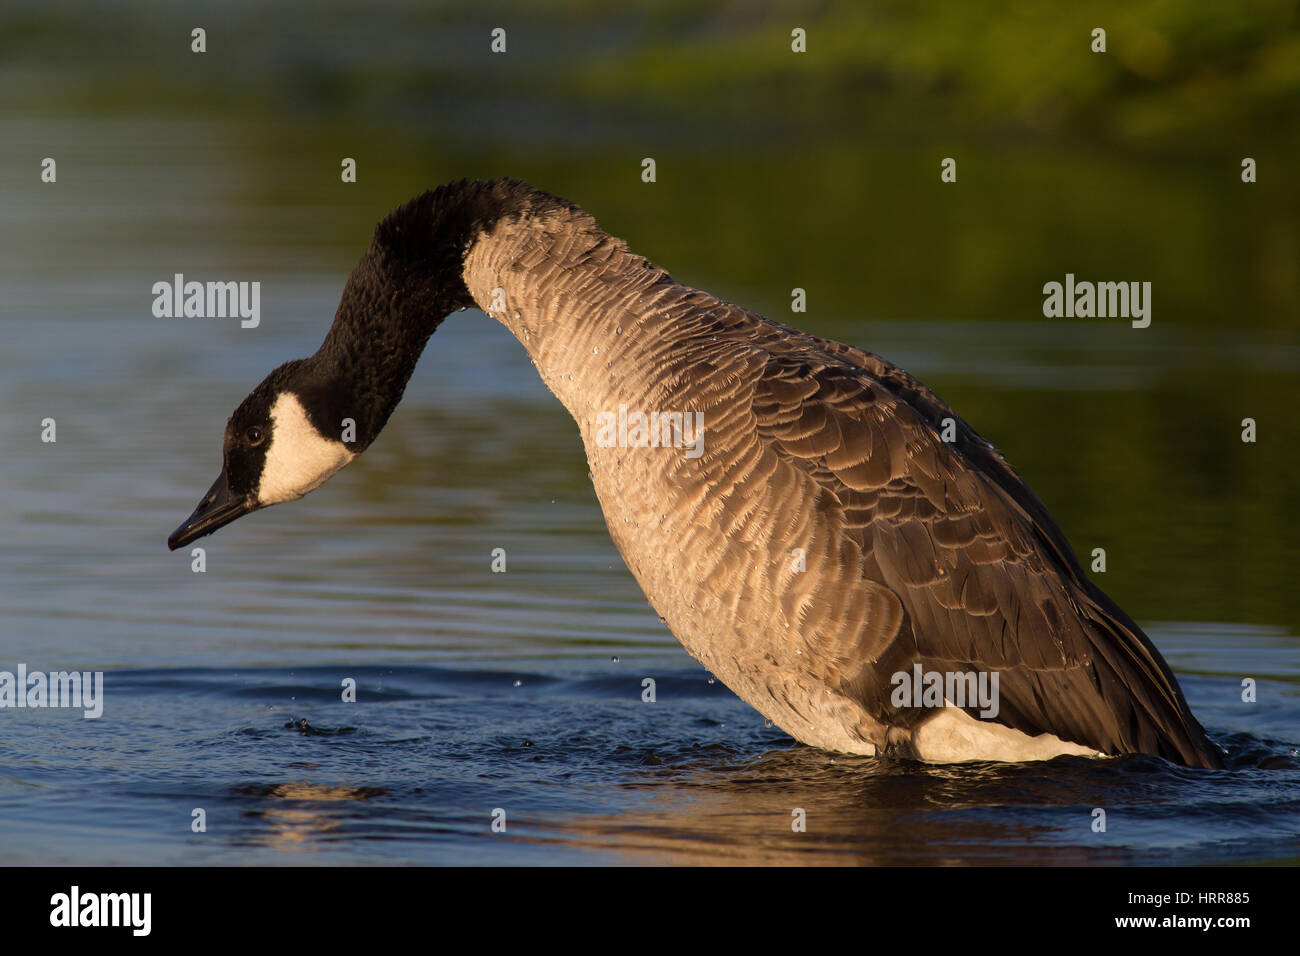 Canada Goose (Branta canadensis), bathing in water, Kemnade, Witten, North Rhine-Westphalia, Germany Stock Photo